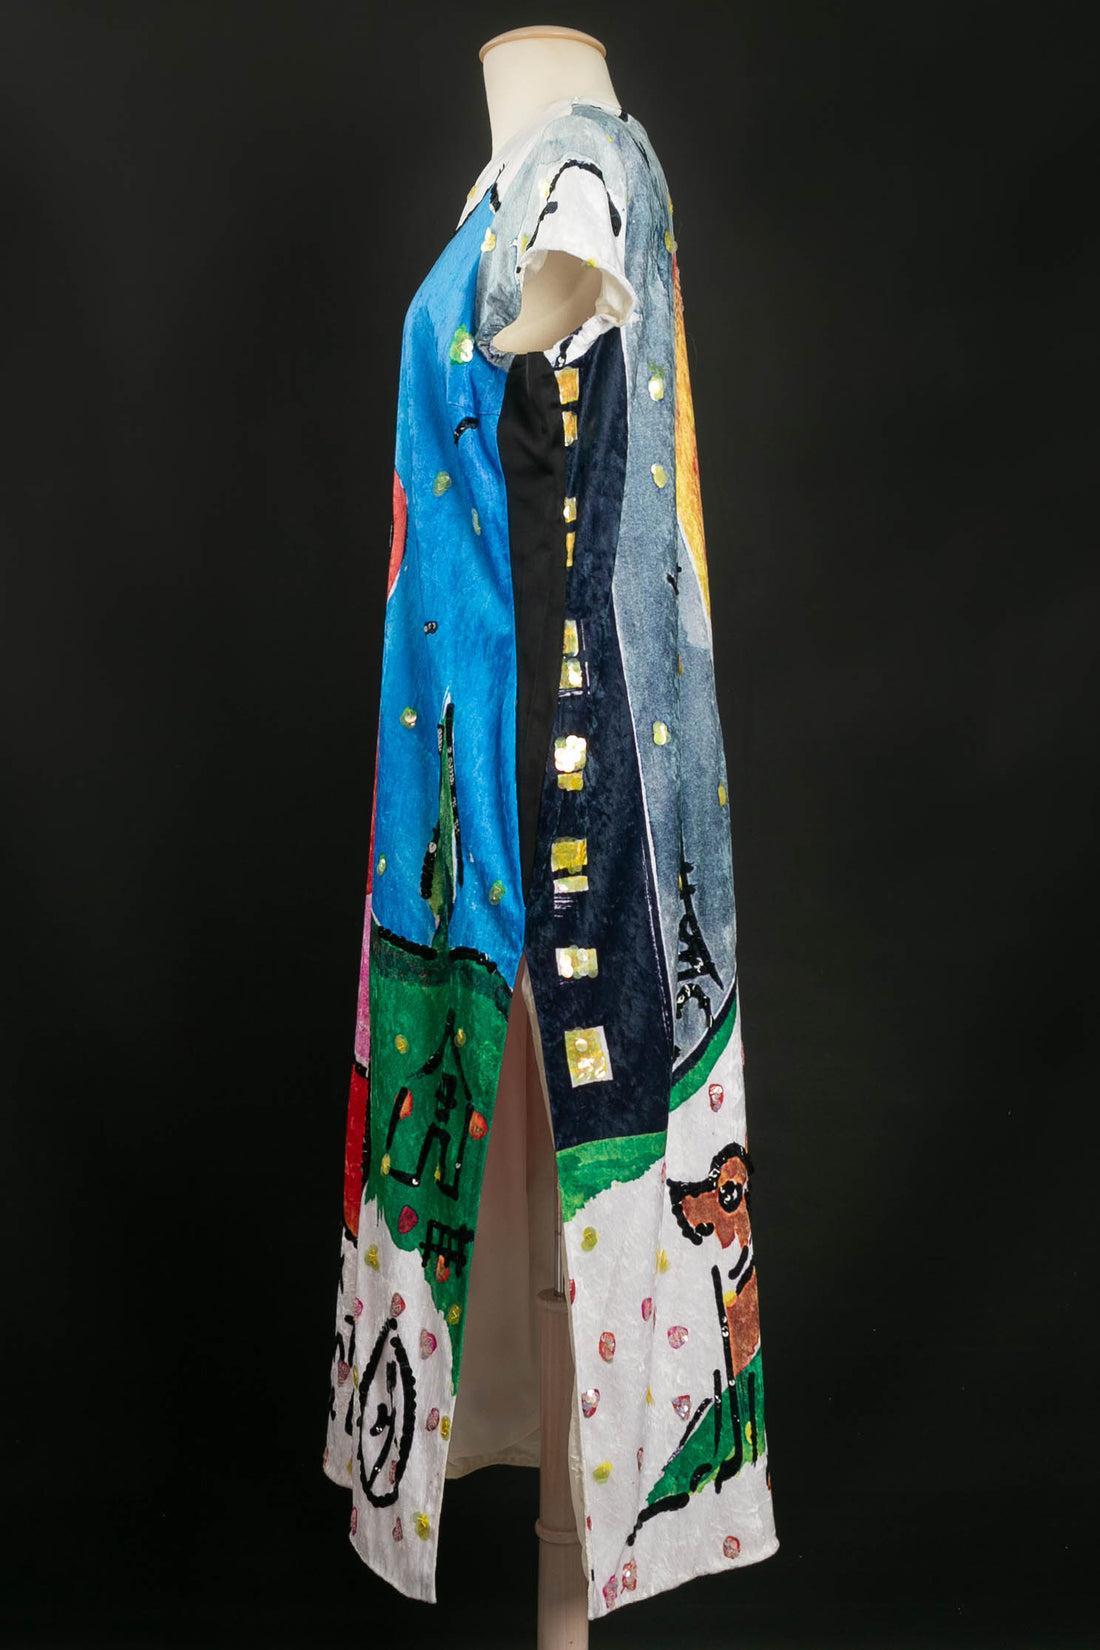 Castelbajac - Robe longue en velours décorée de paillettes. Pas de Label de taille ni de composition, il correspond à une taille 36FR/38FR.

Informations complémentaires : 
Dimensions : Largeur des épaules : 40 cm, Poitrine : 58 cm, Longueur des